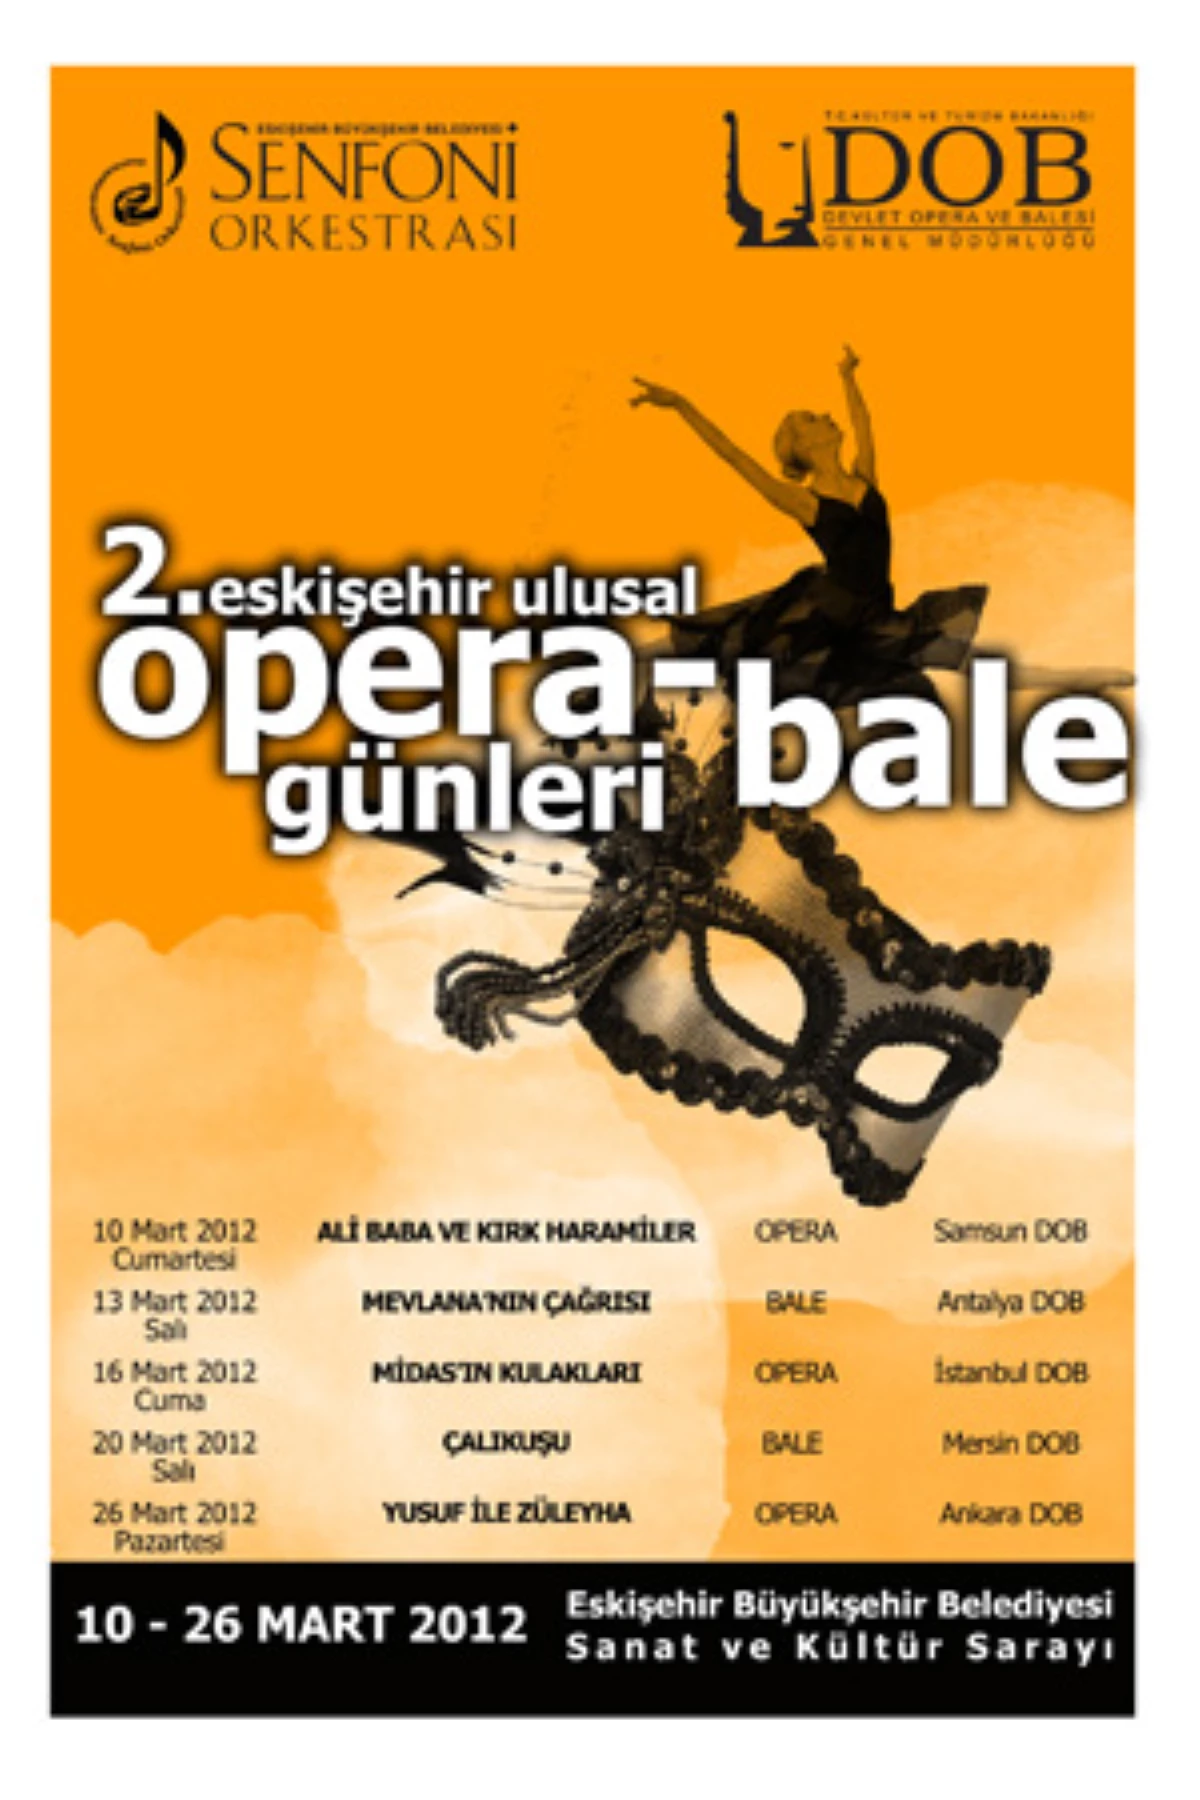 2. Ulusal Opera ve Bale Günleri Başlıyor